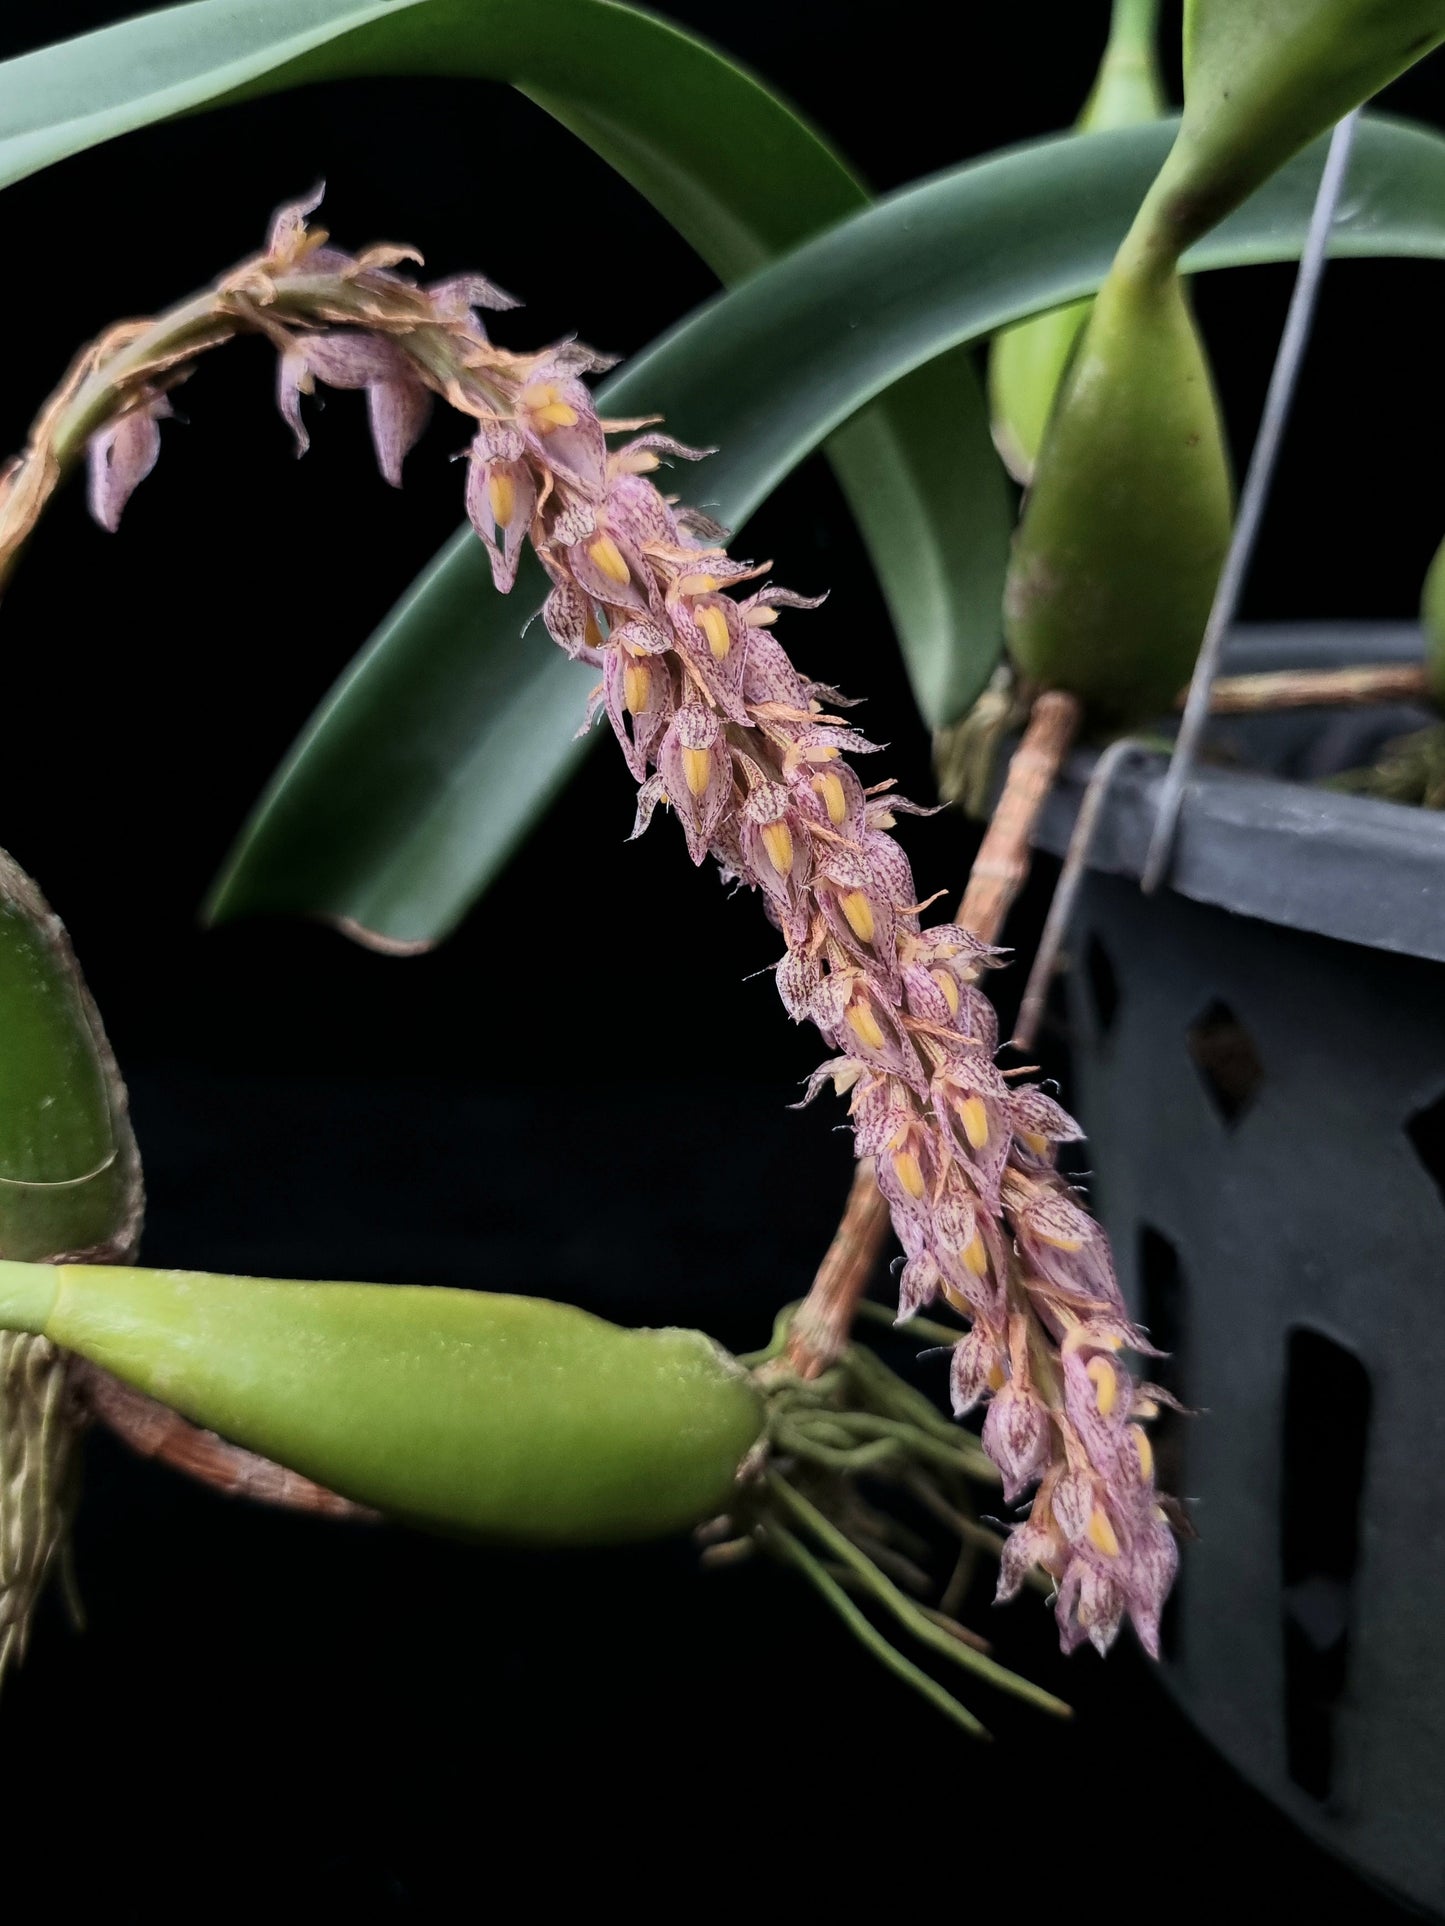 Bulbophyllum orchid sale Singapore flower detail